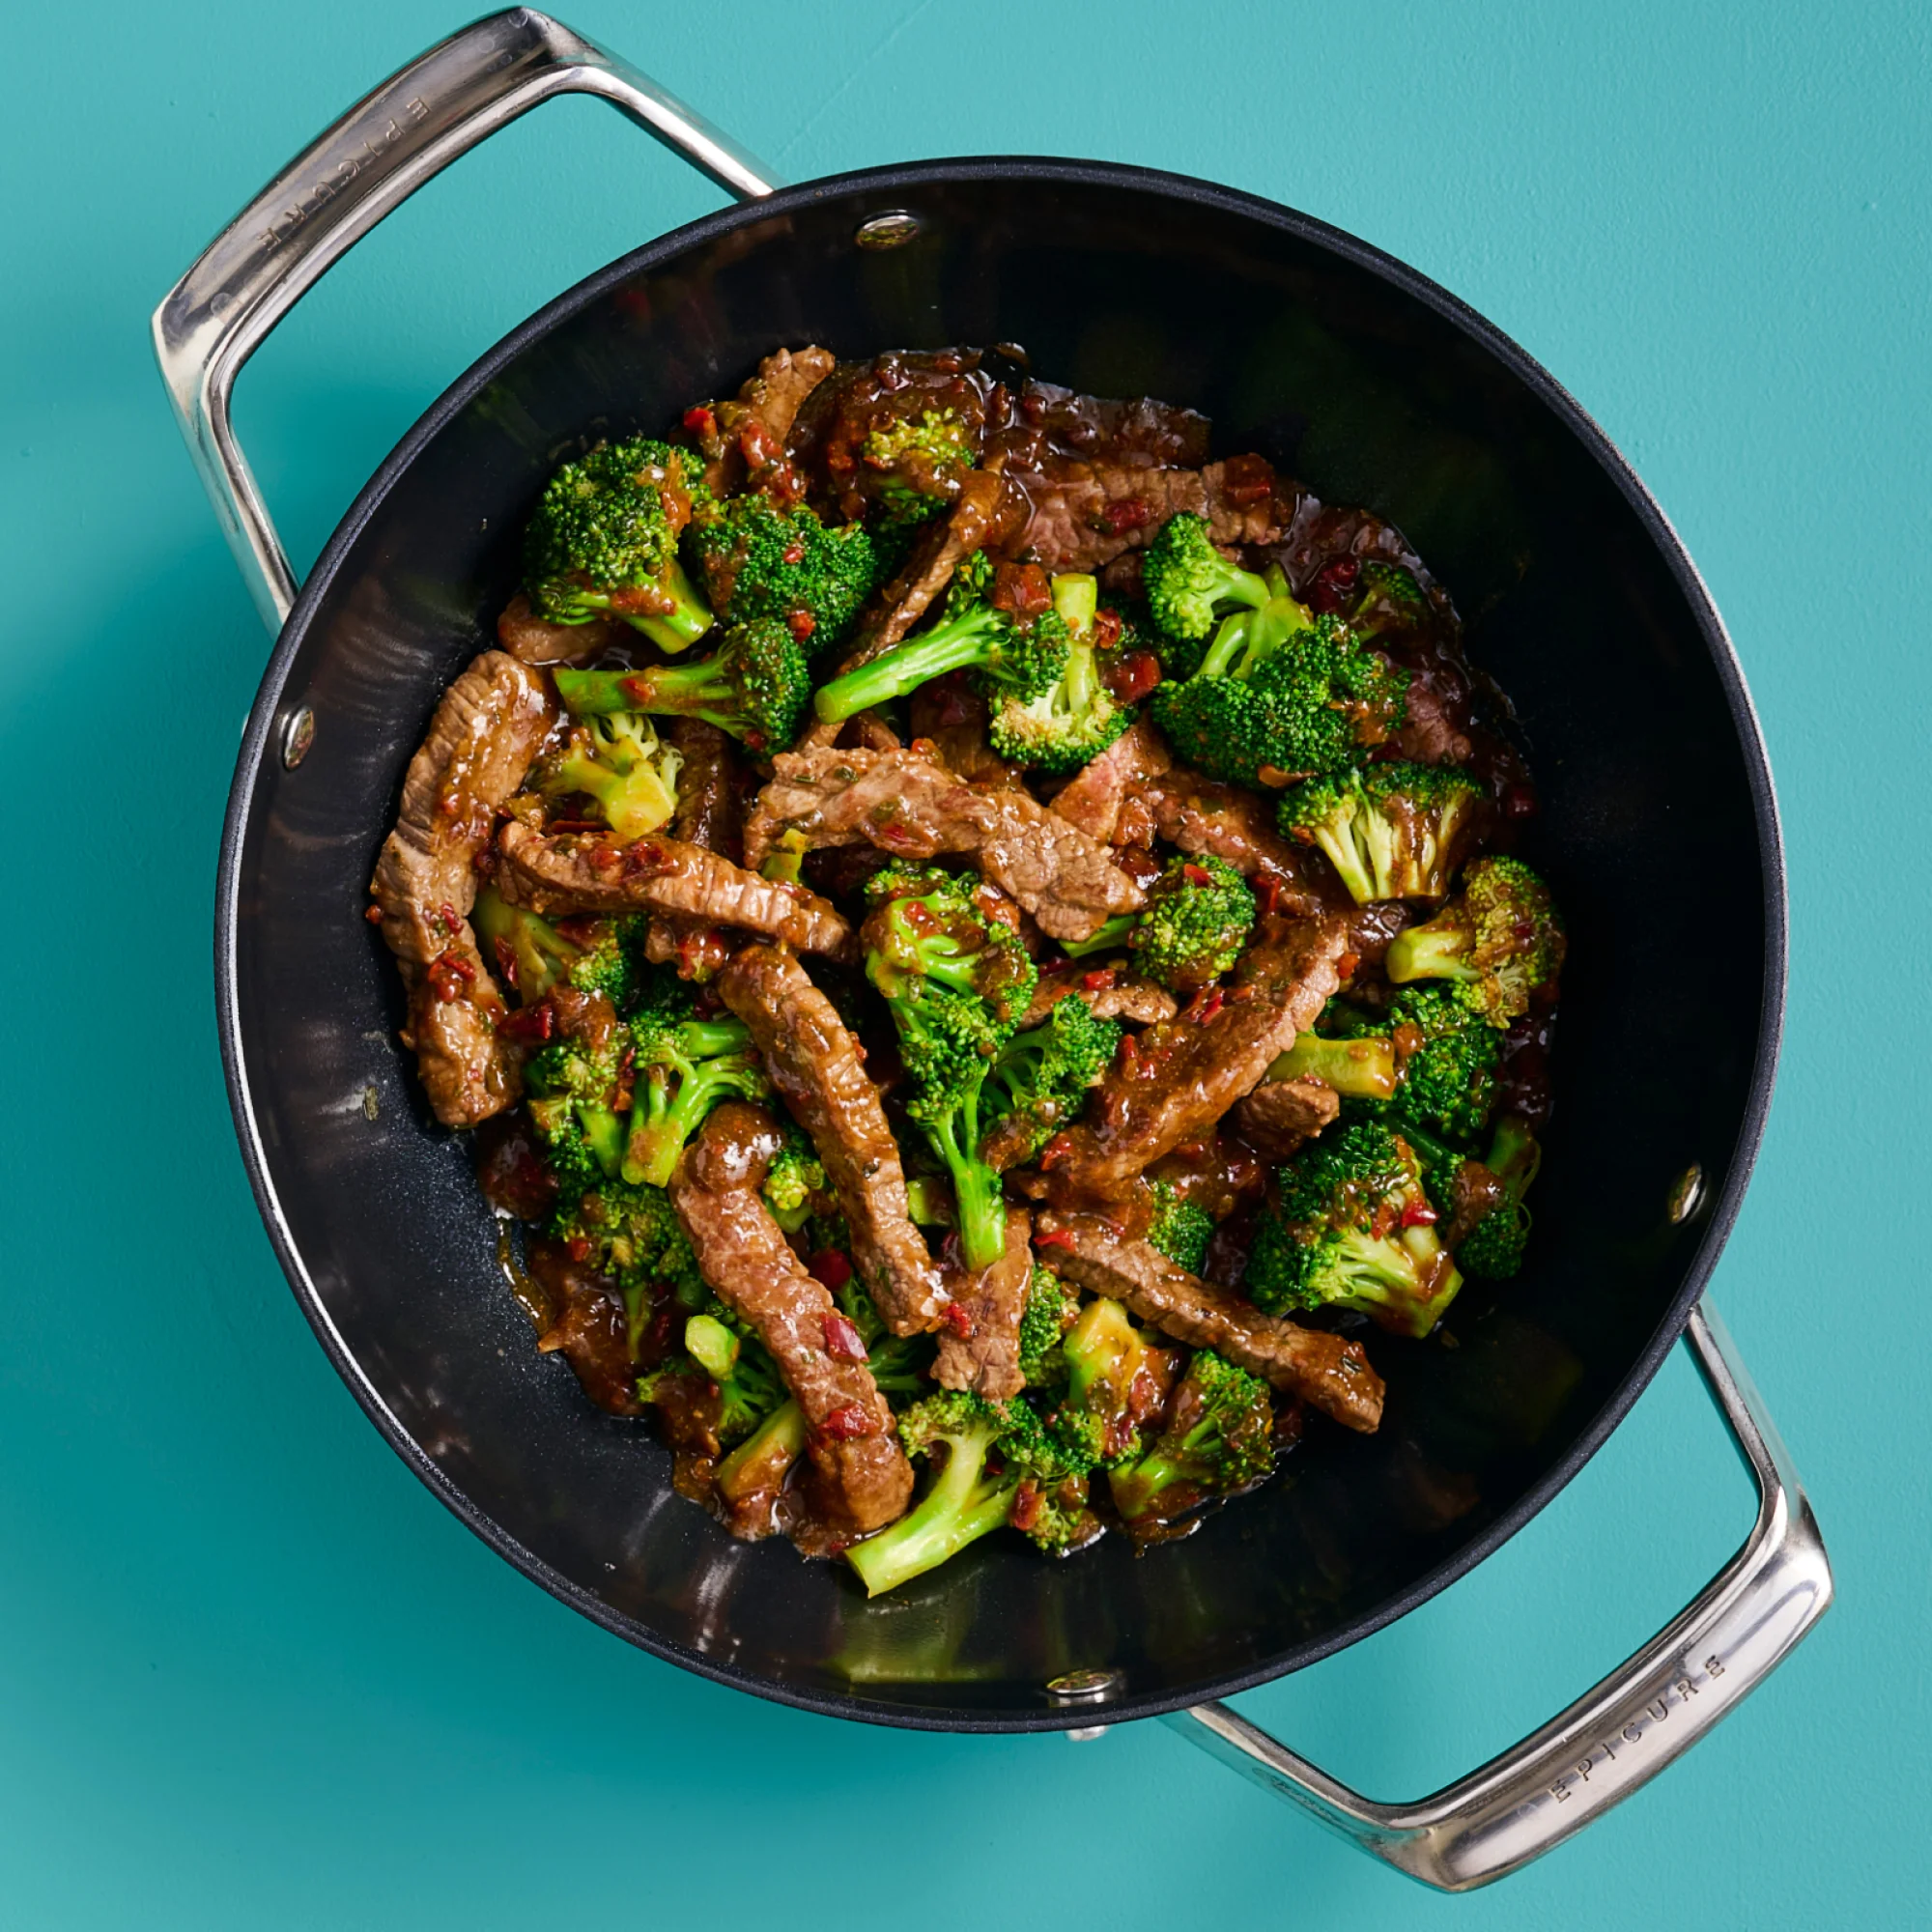 Beef & Broccoli Stir-Fry Seasoning (Pack of 3)